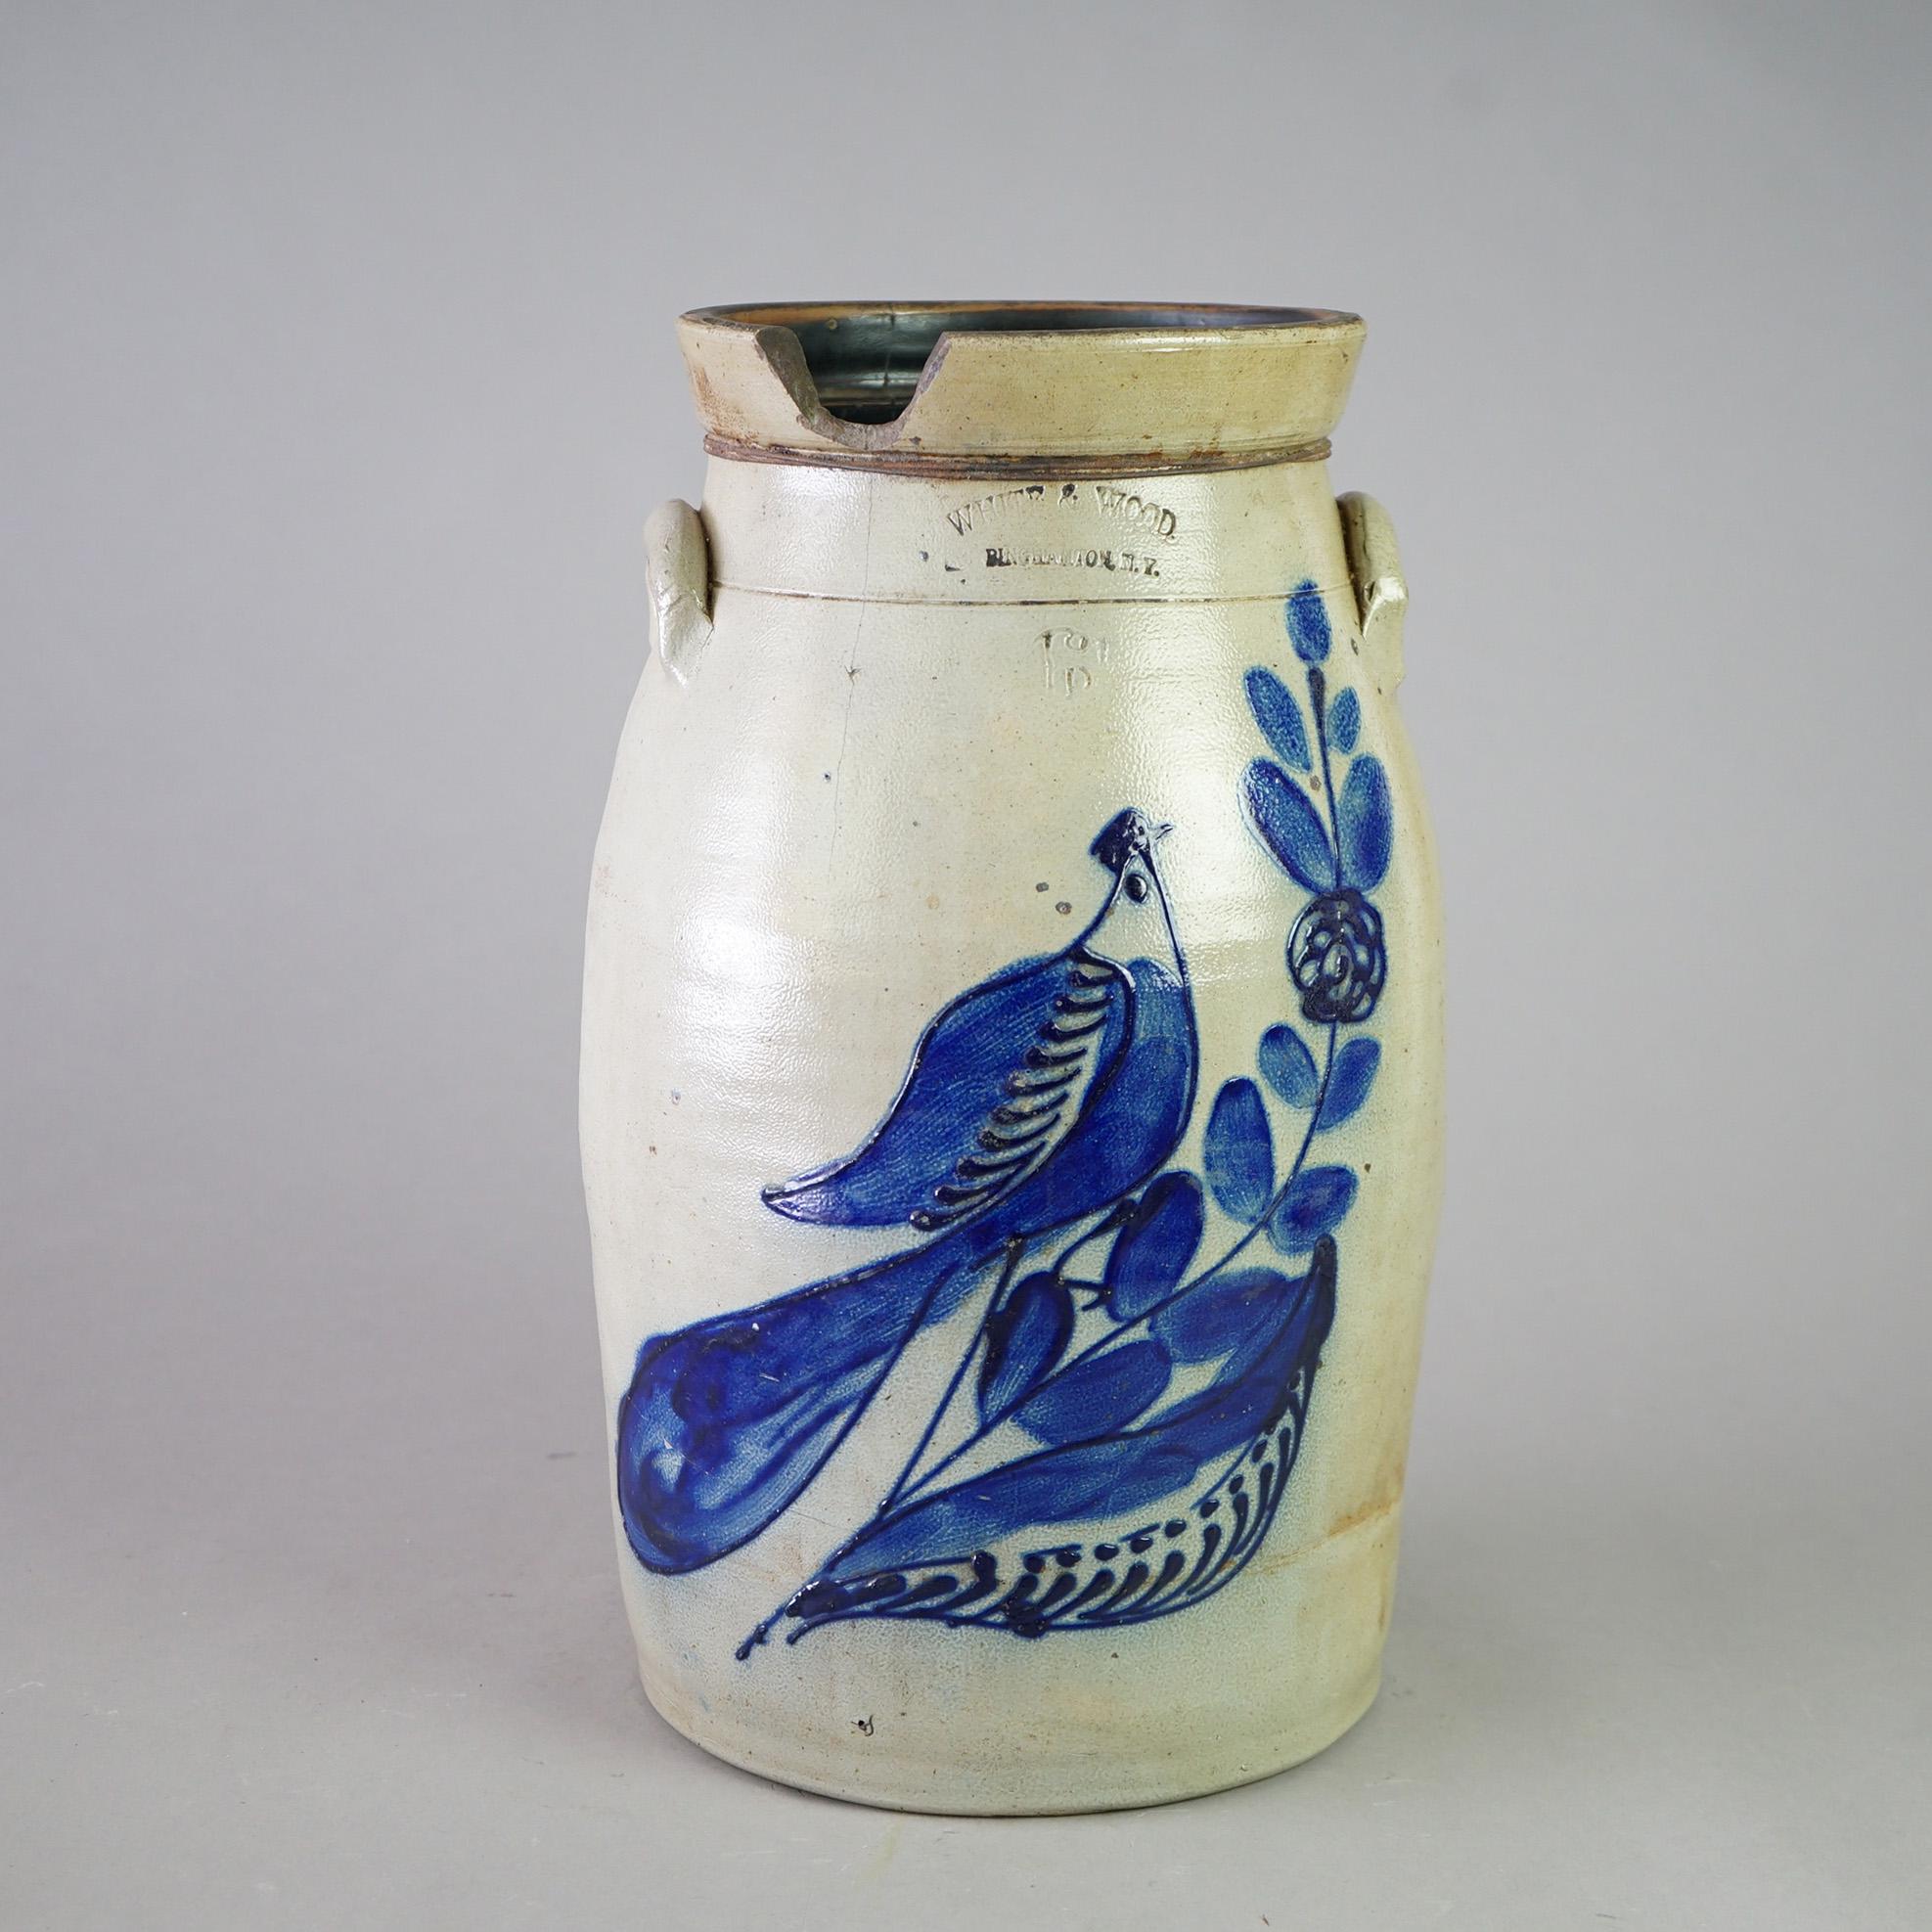 Primitive Antique Binghamton White & Wood Paddle Bird Blue Decorated Stoneware Churn c1870